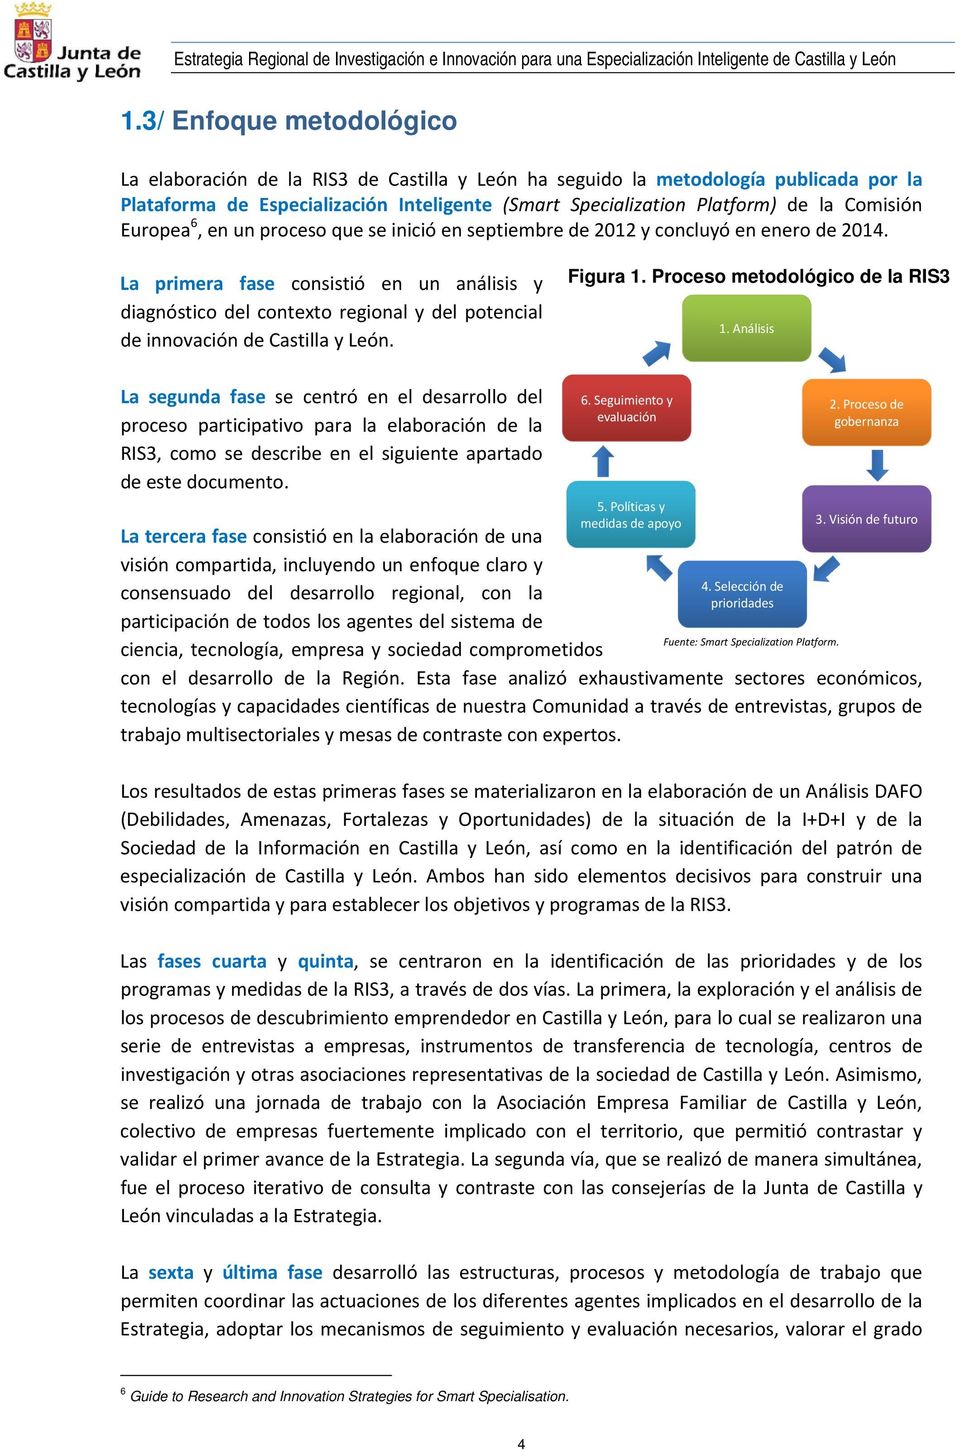 La primera fase consistió en un análisis y diagnóstico del contexto regional y del potencial de innovación de Castilla y León. Figura 1. Proceso metodológico de la RIS3 1.